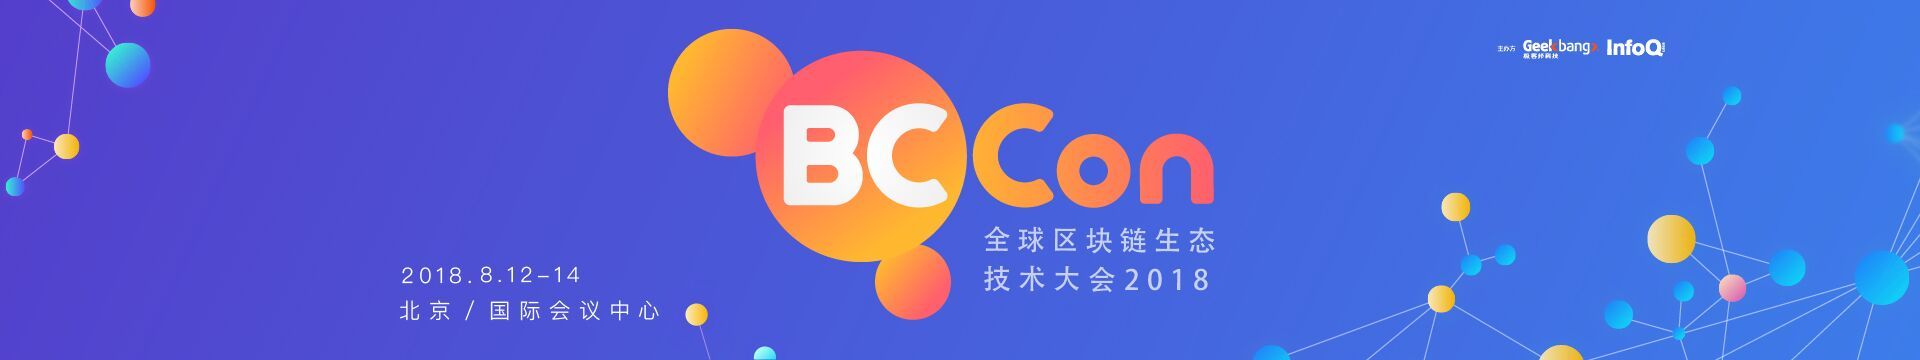 BCCon全球区块链生态技术大会